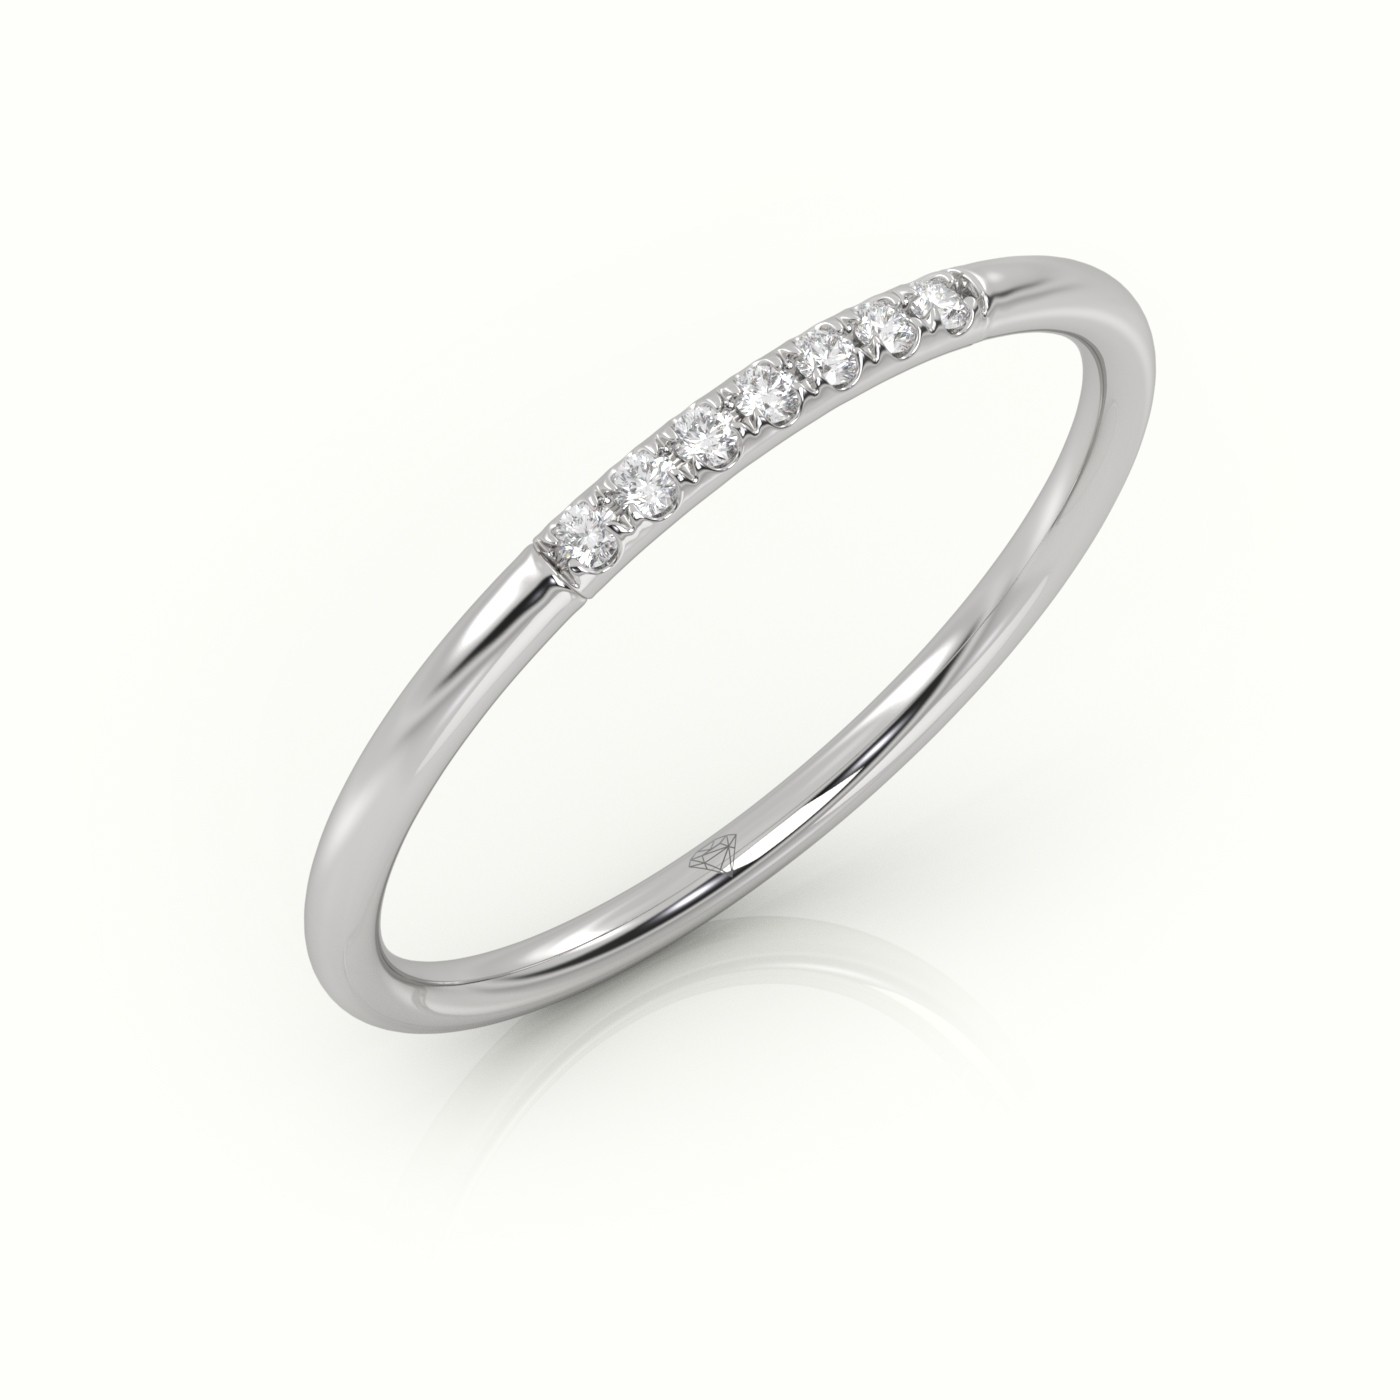 18k white gold  round cut diamond highly polished half eternity wedding band Photos & images